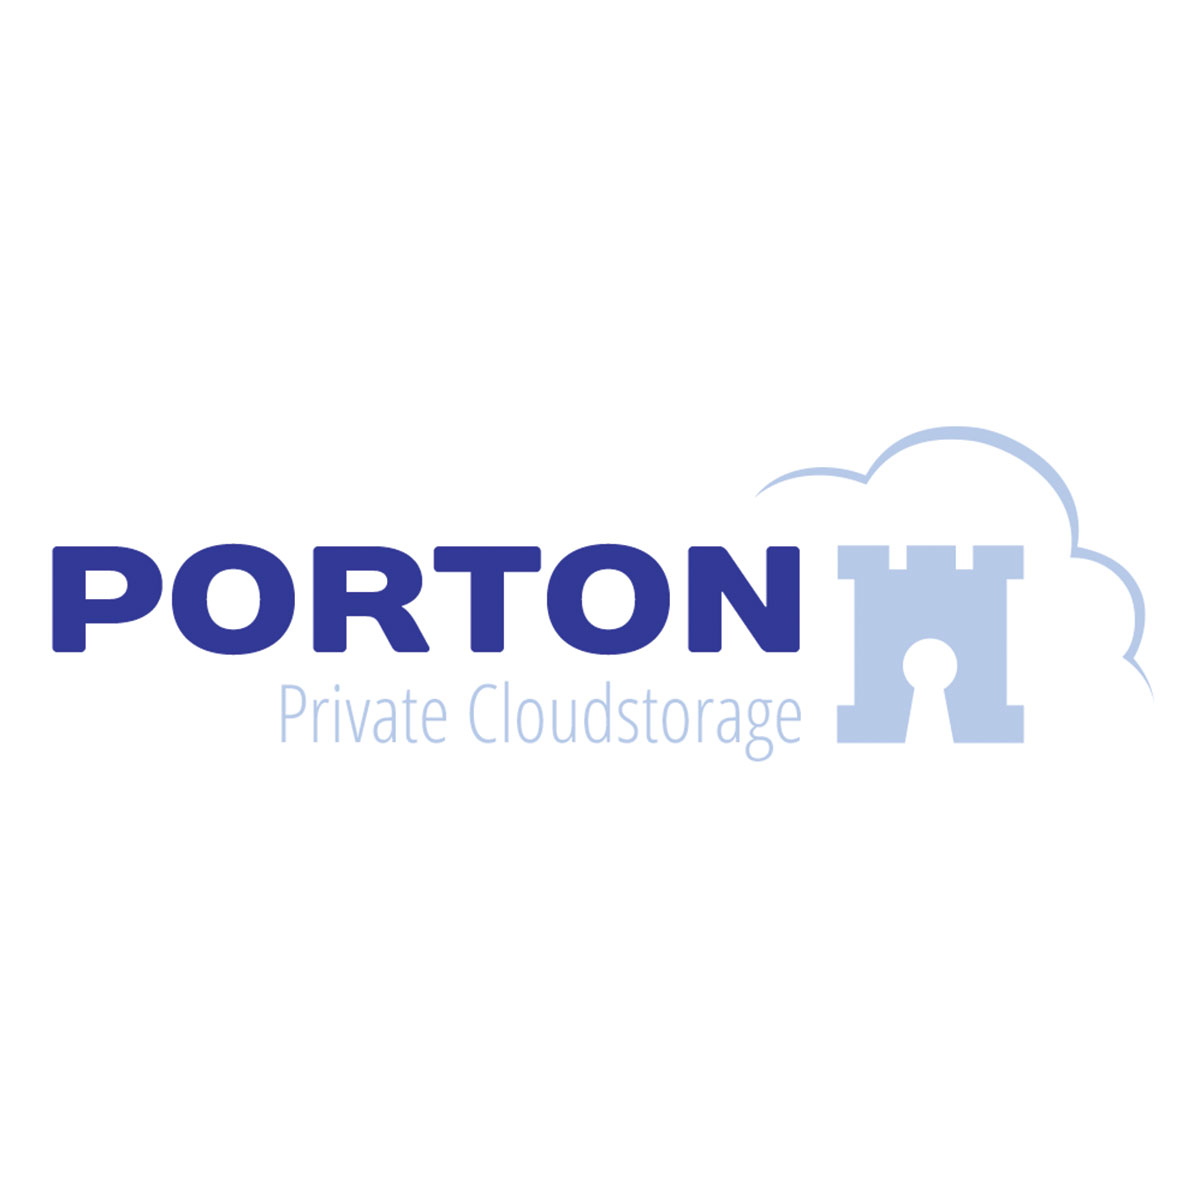 Porton.nl reviews, beoordelingen en ervaringen